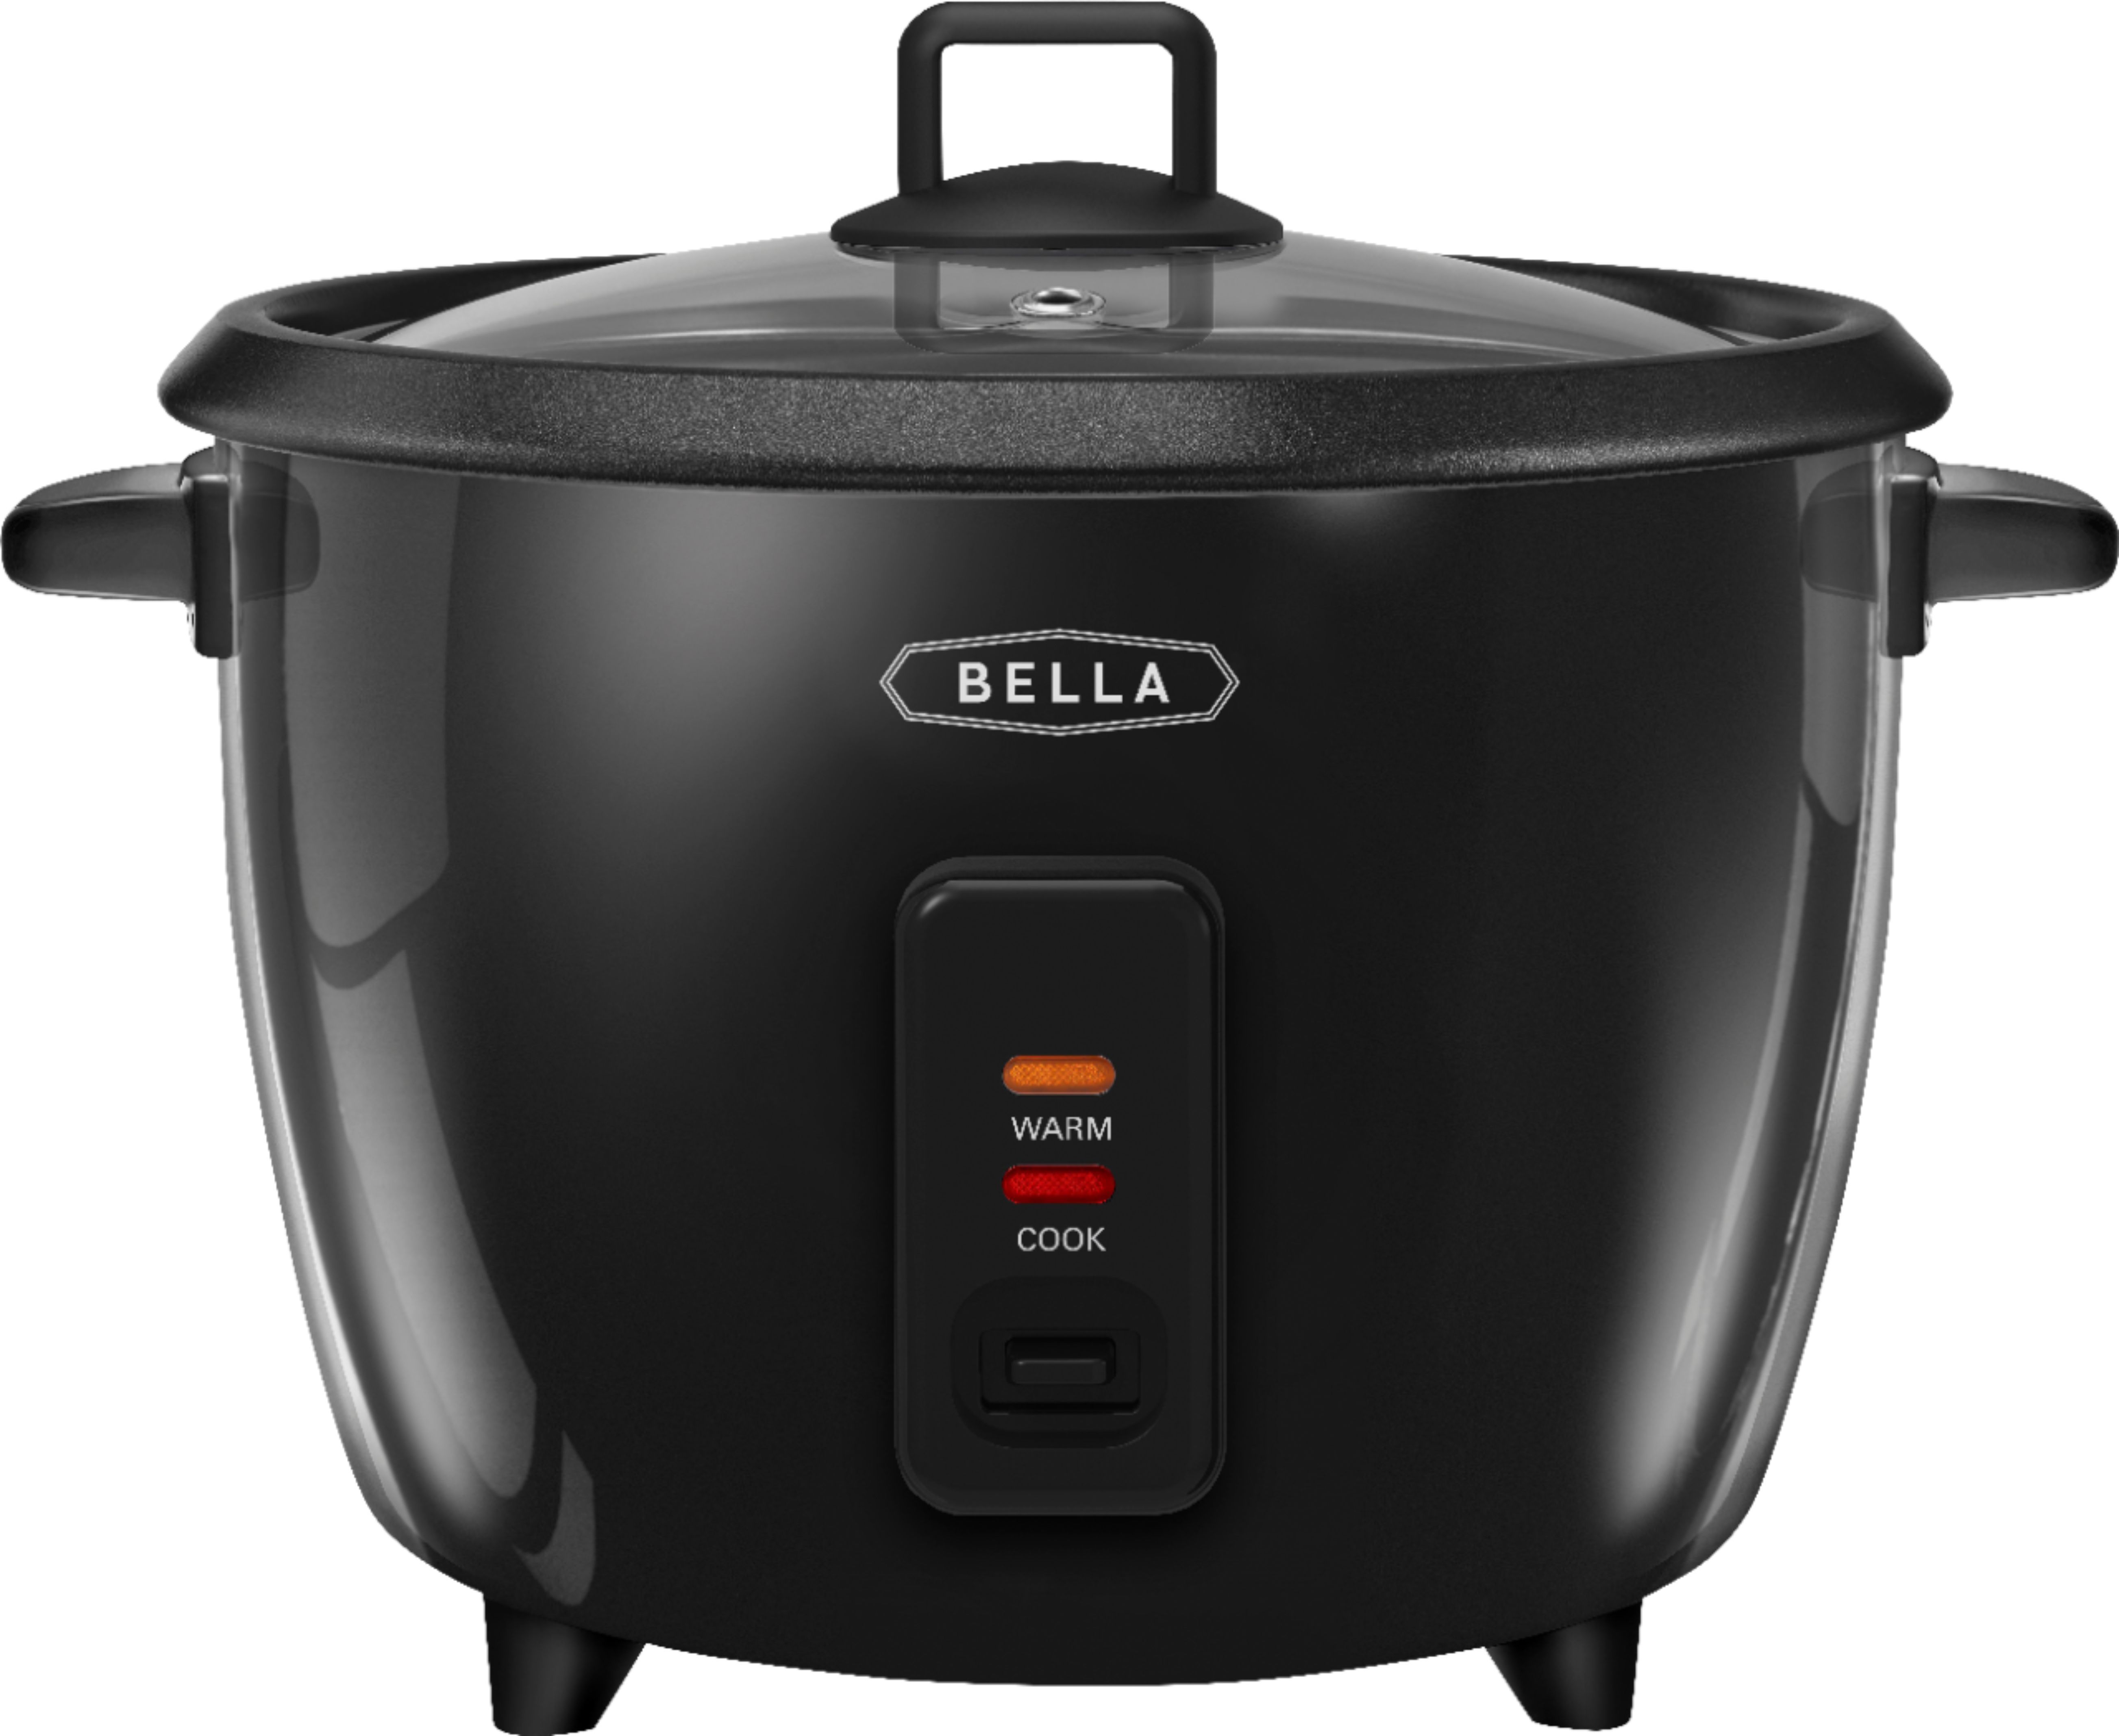 Bella 16-Cup Manual Rice Cooker Black 17169 - Best Buy | Best Buy U.S.